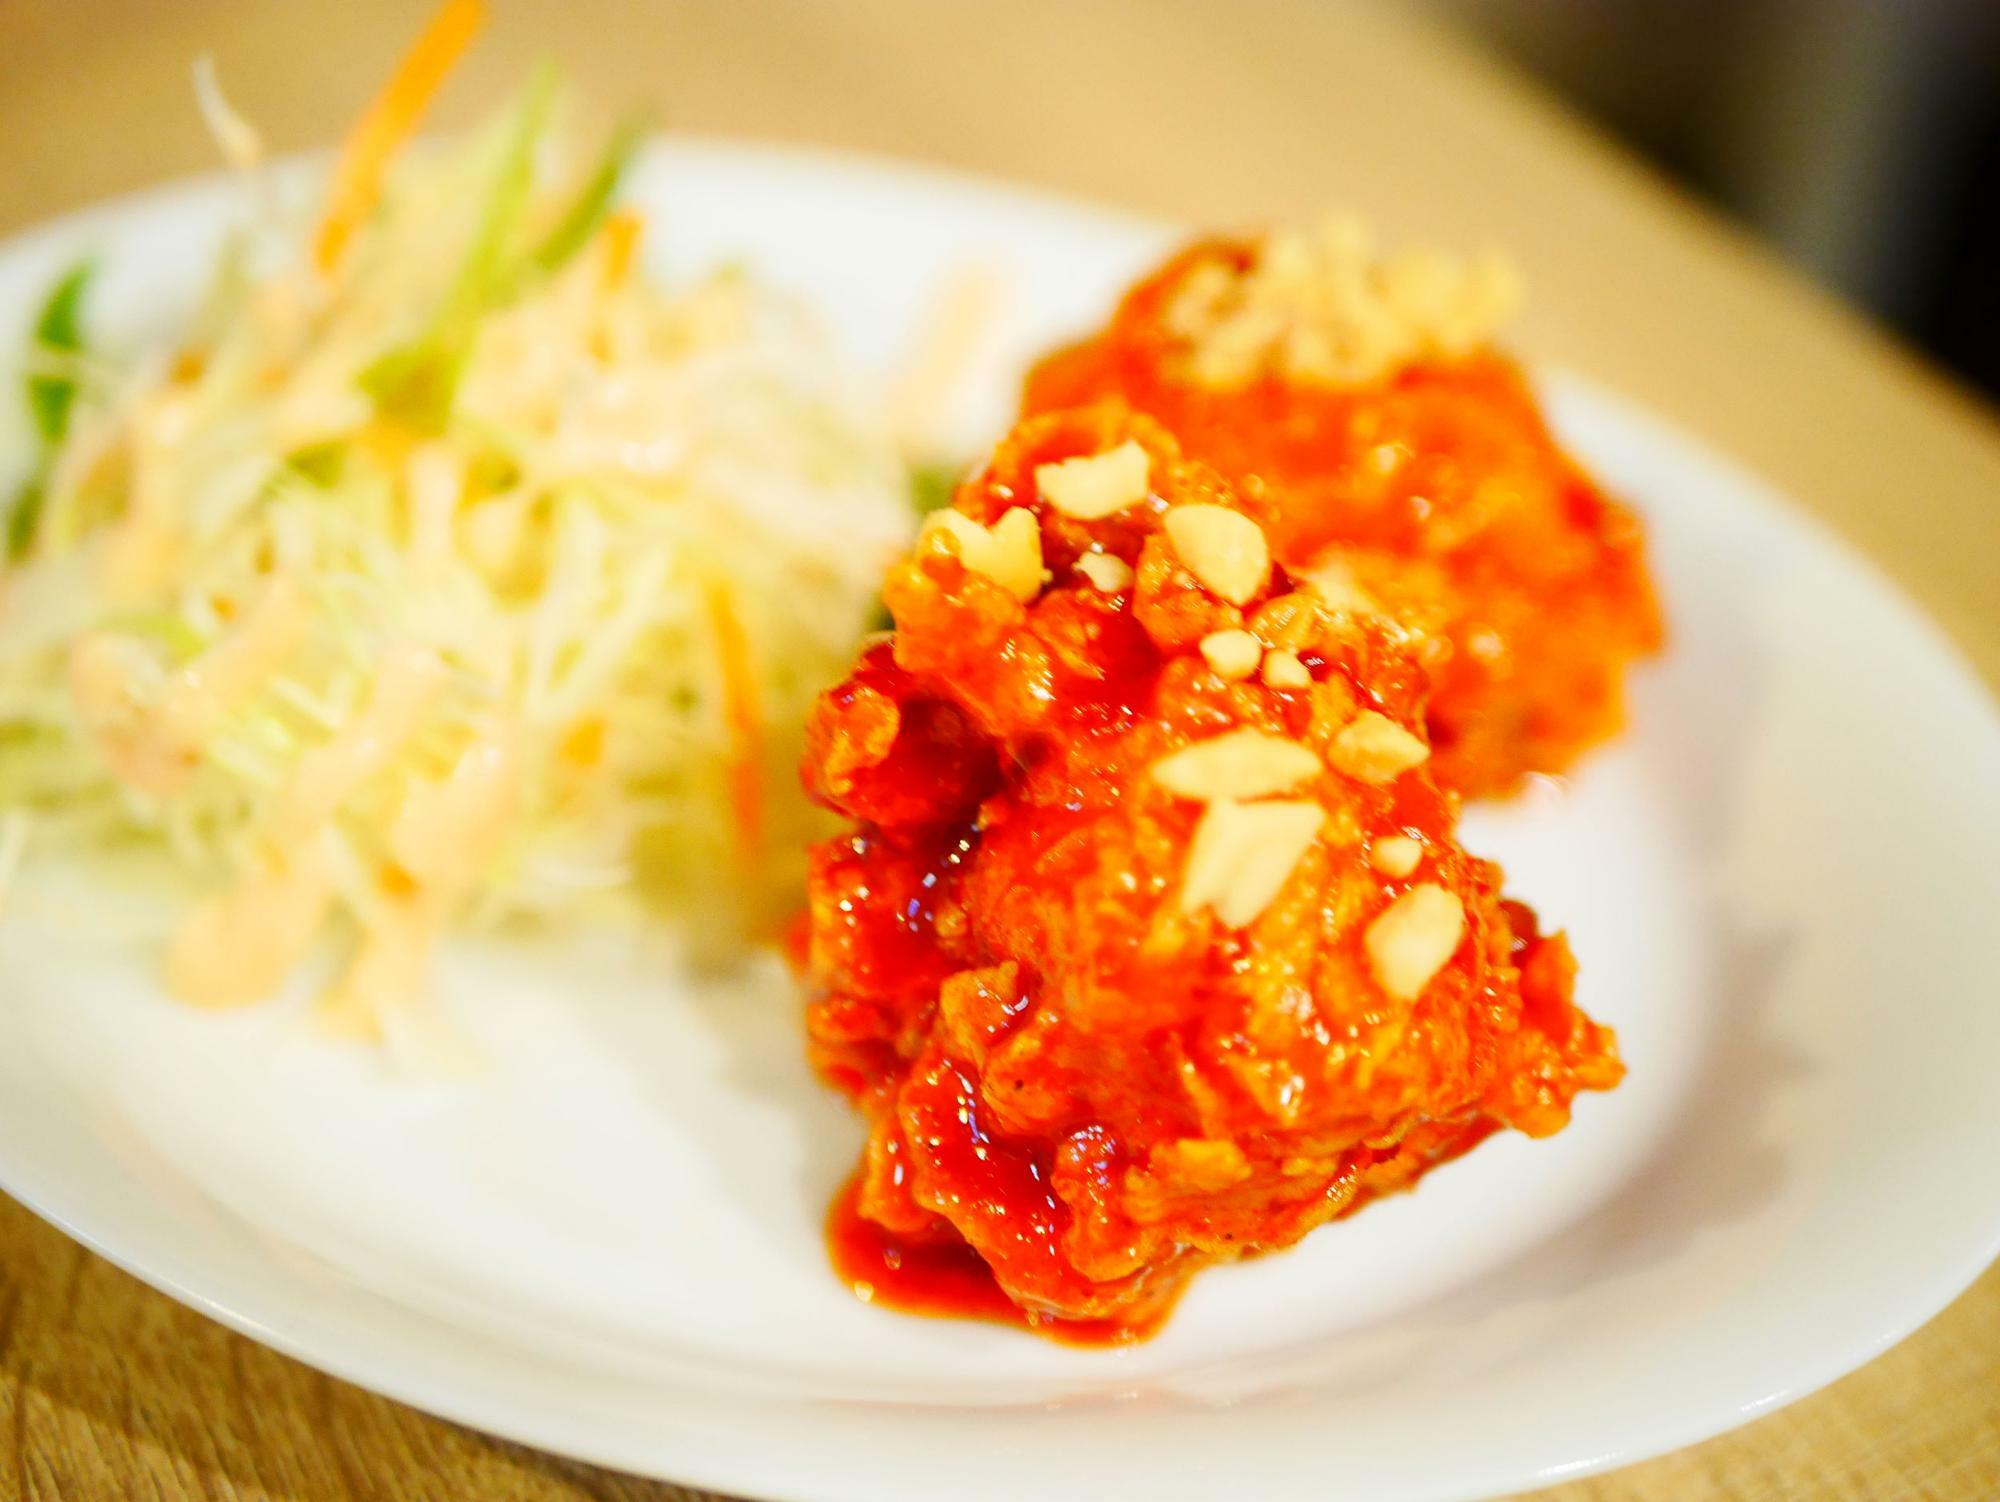 チキンパウダーも手作り。ヤンニョムソースは韓国の市場で売っているヤンニョムチキンソースの味を手作りで再現している